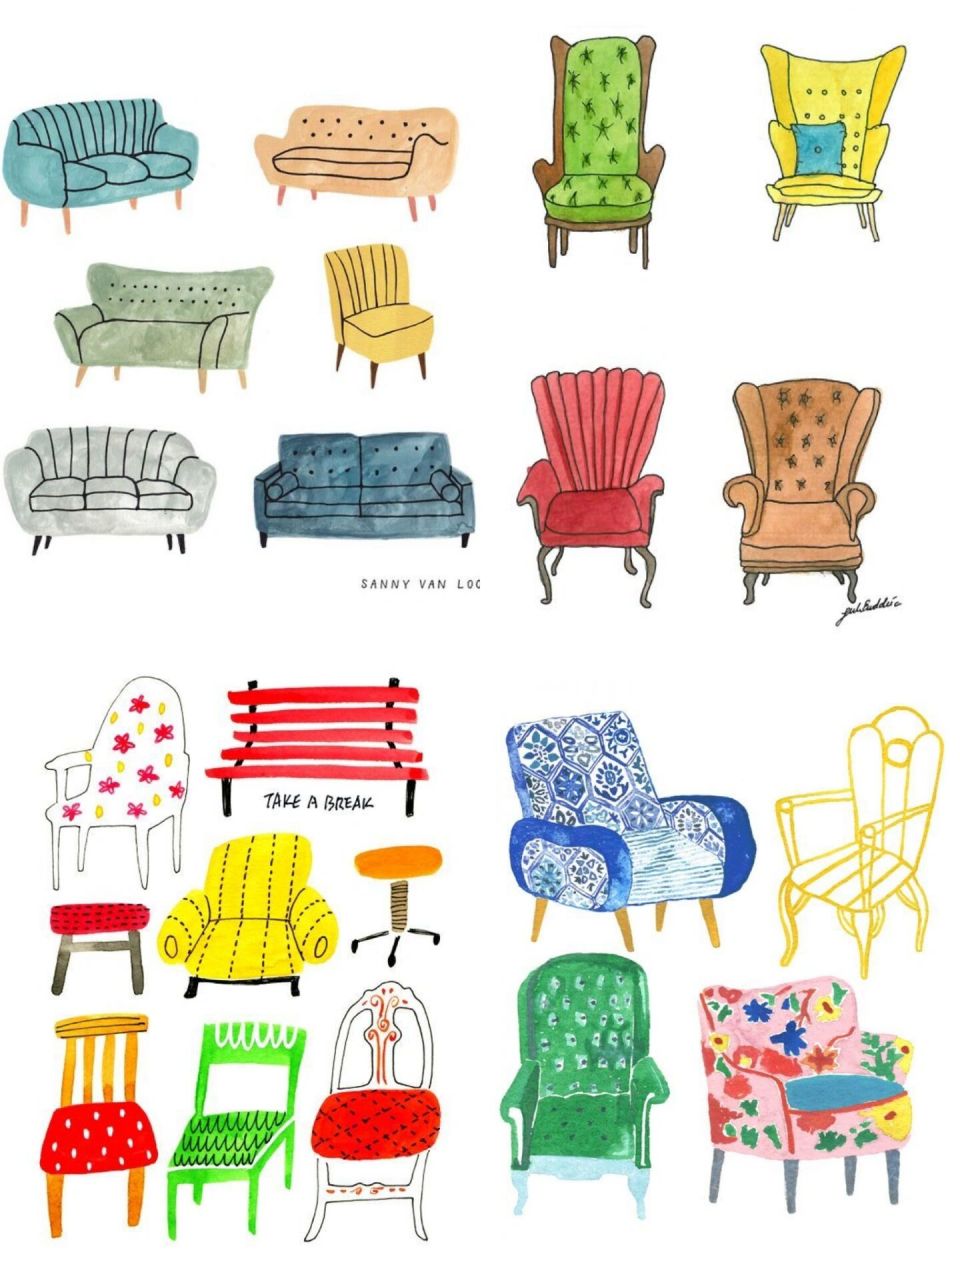 各种创意的椅子绘画图片